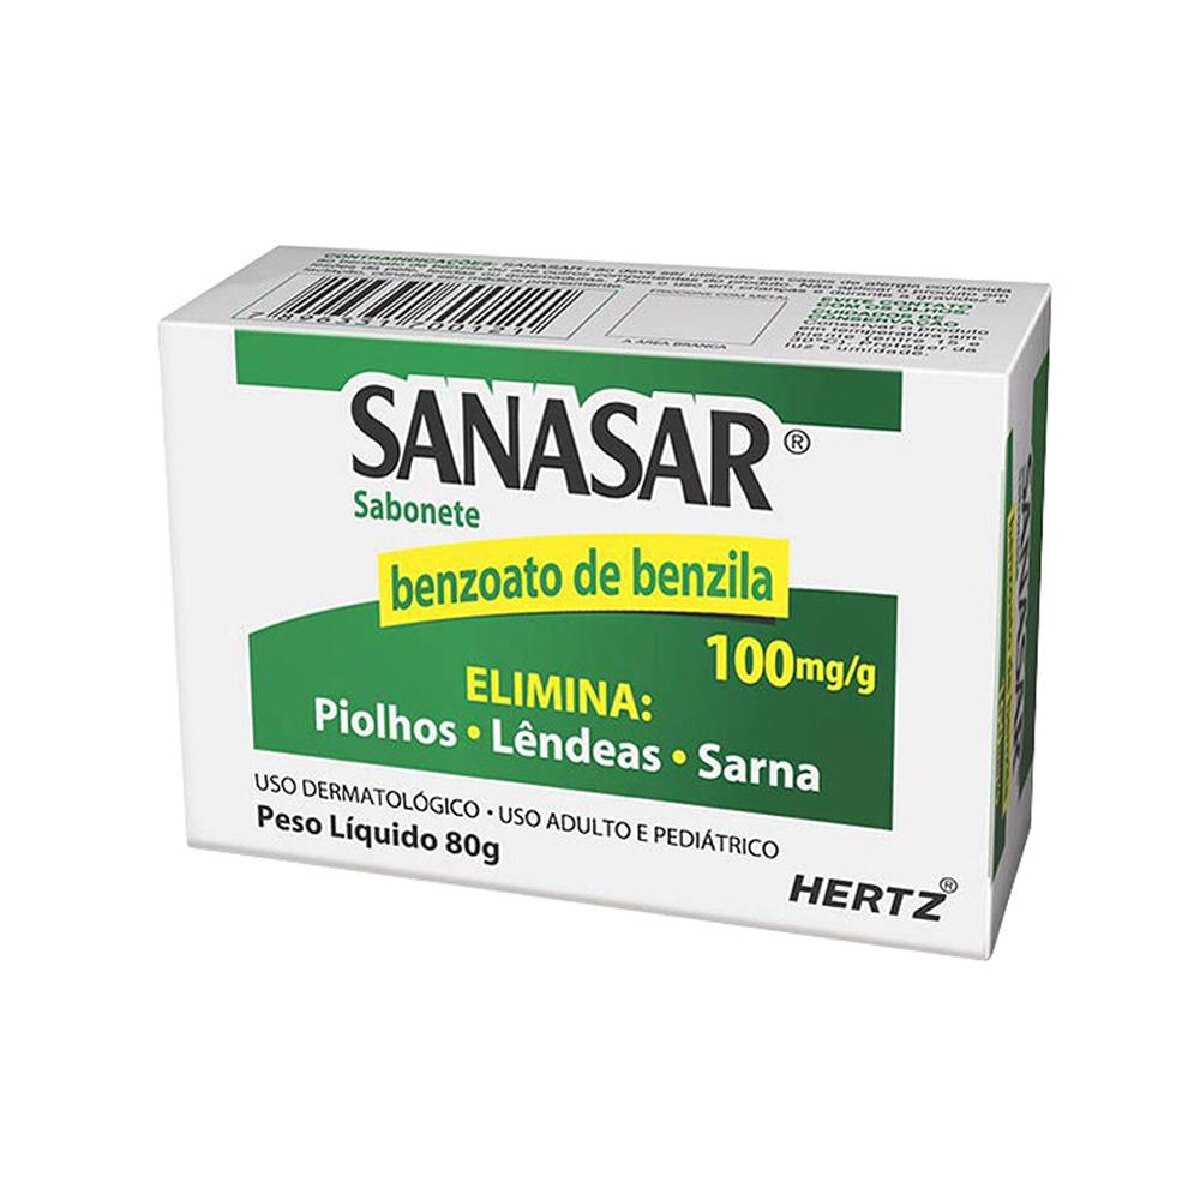 Sanasar Sabonete 100mg 80g